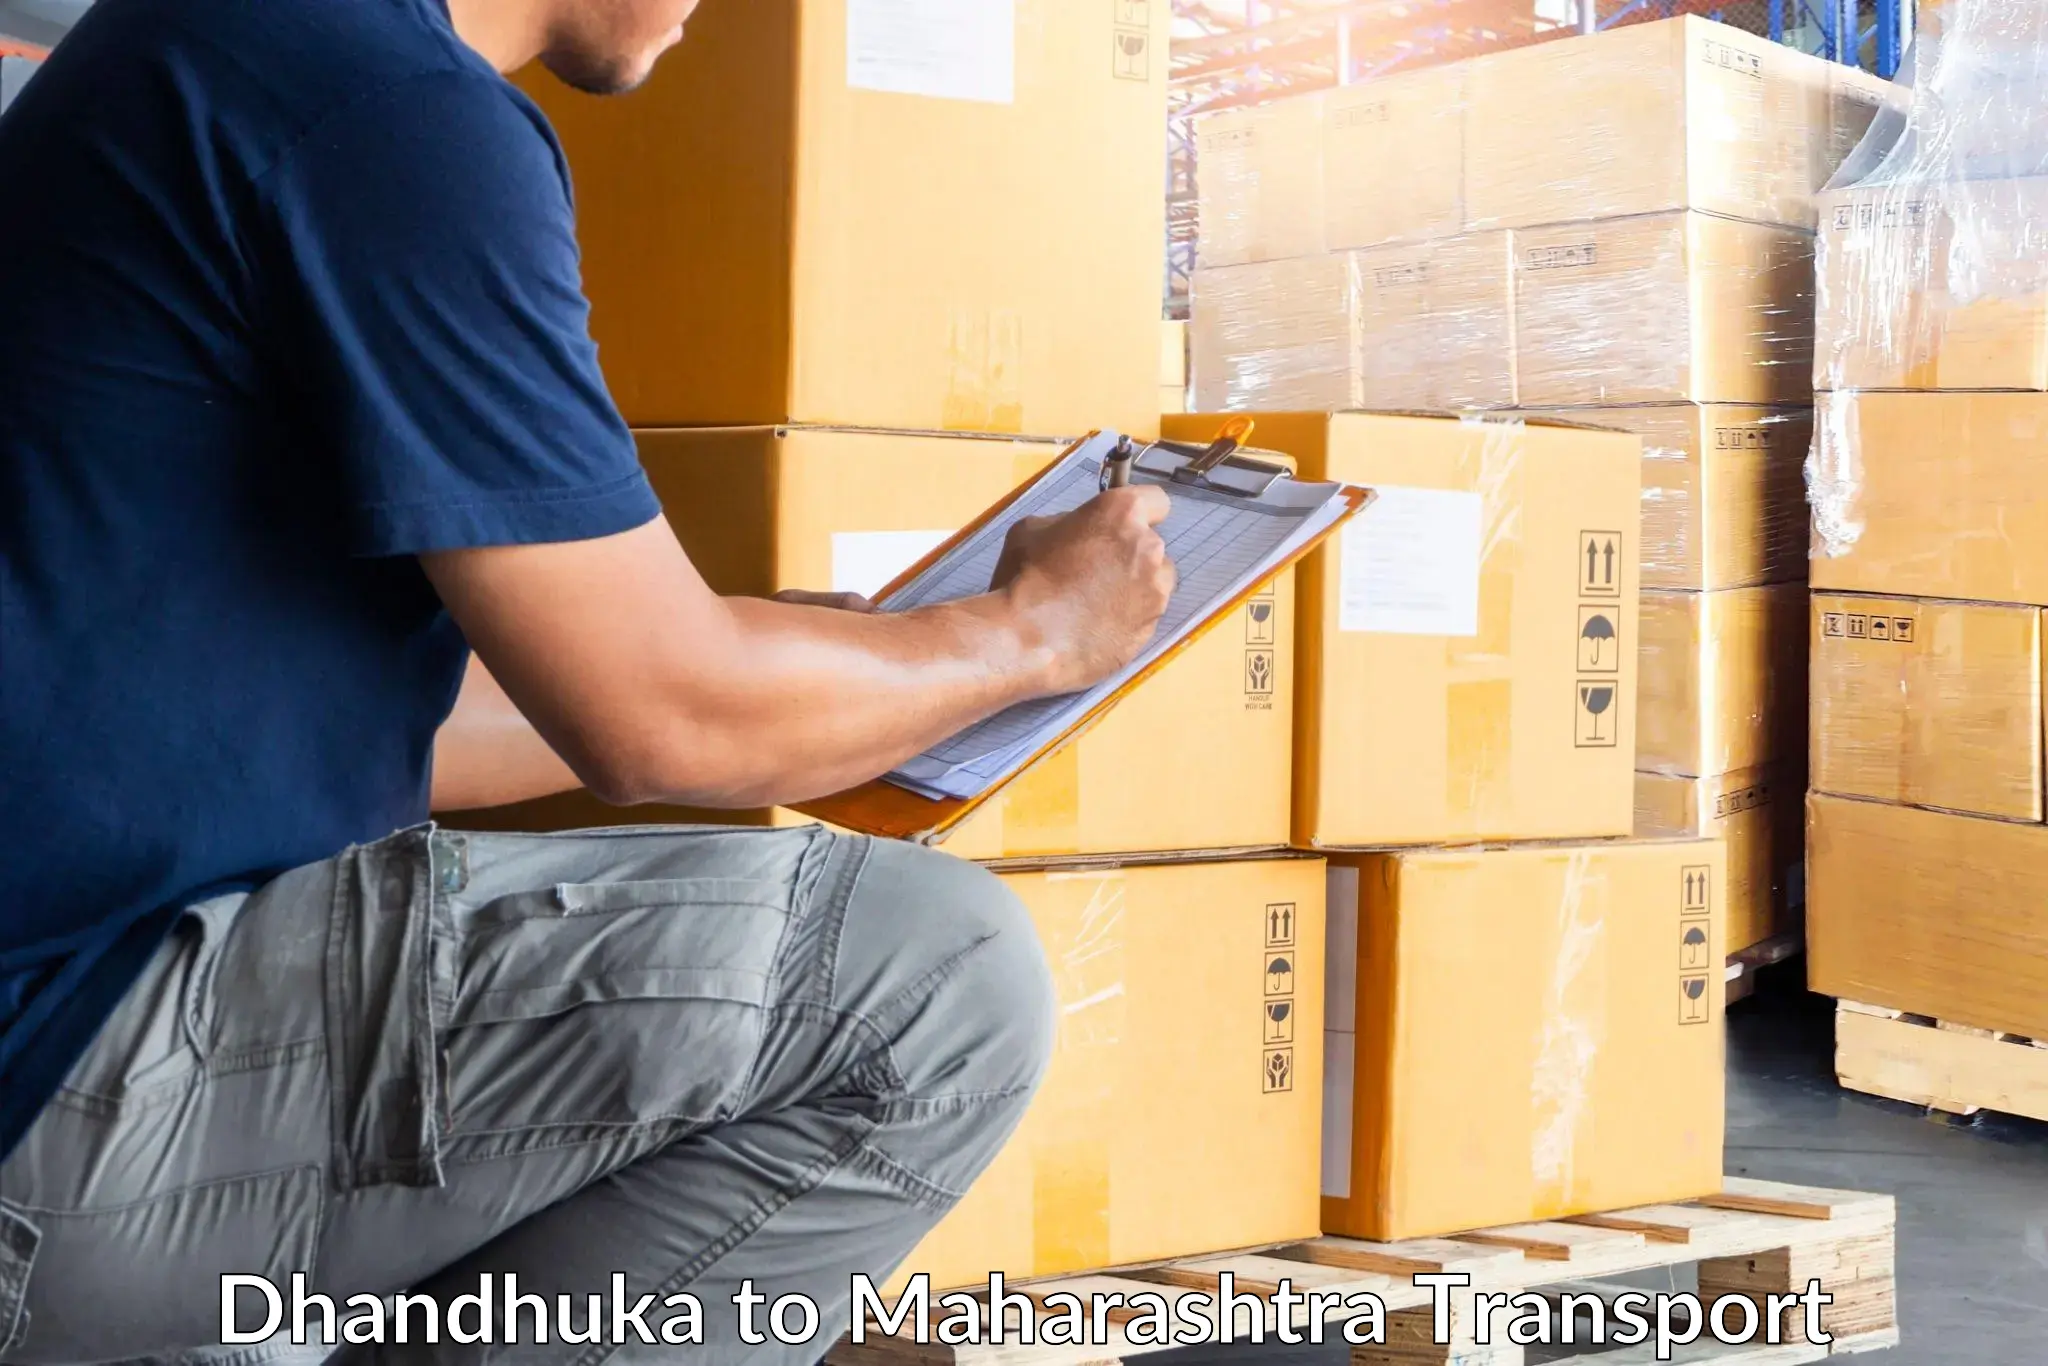 Delivery service Dhandhuka to Gadhinglaj